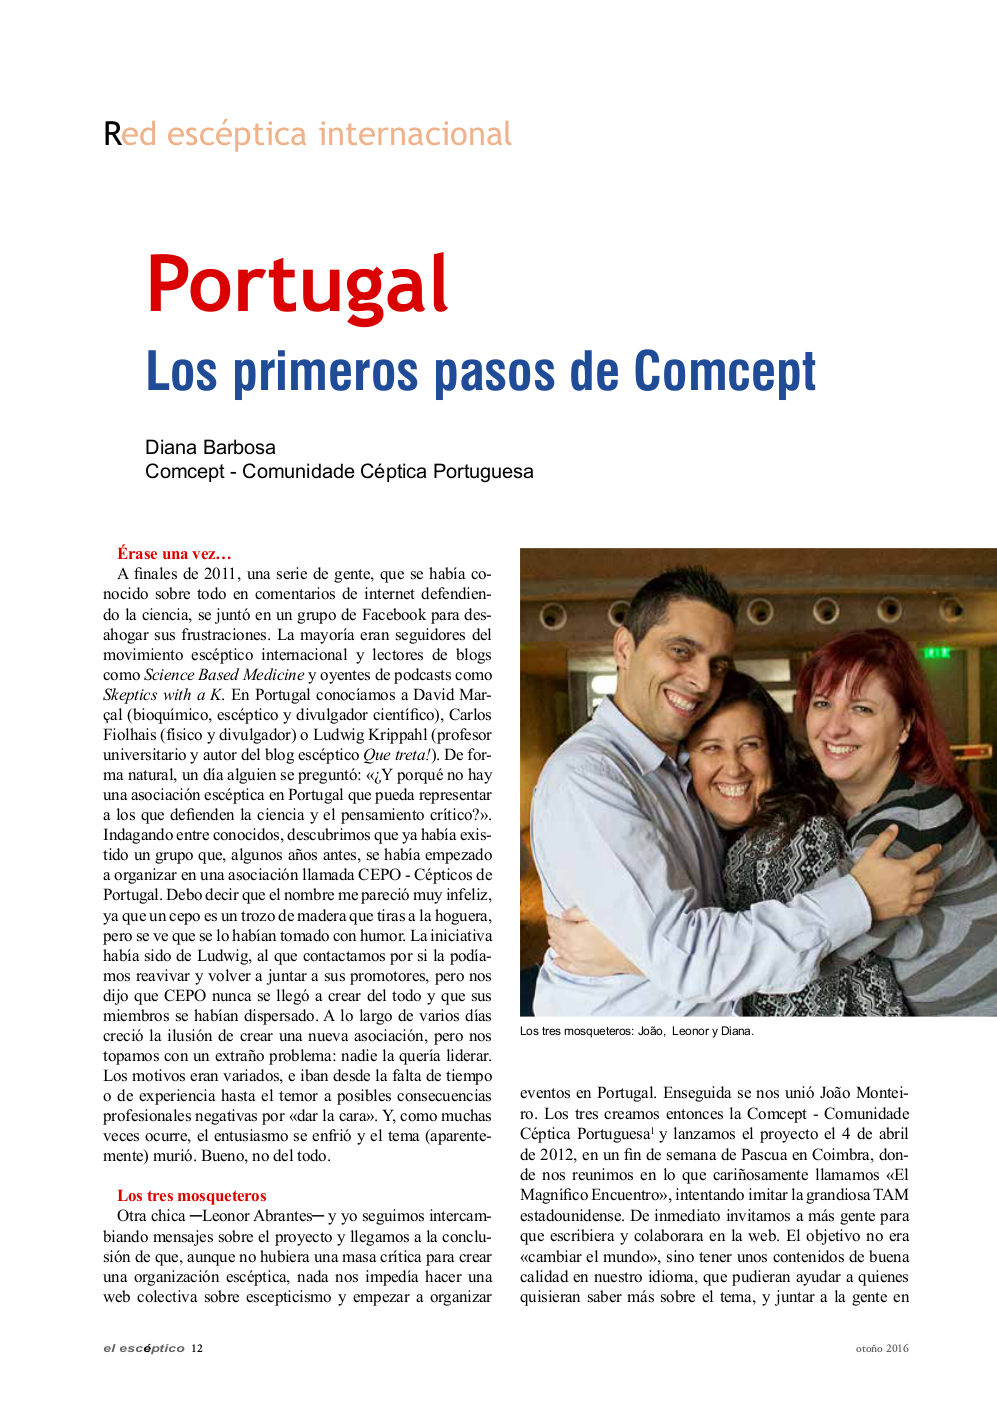 Portugal - Los primeros pasos de Comcept (El Escéptico) - pág. 1